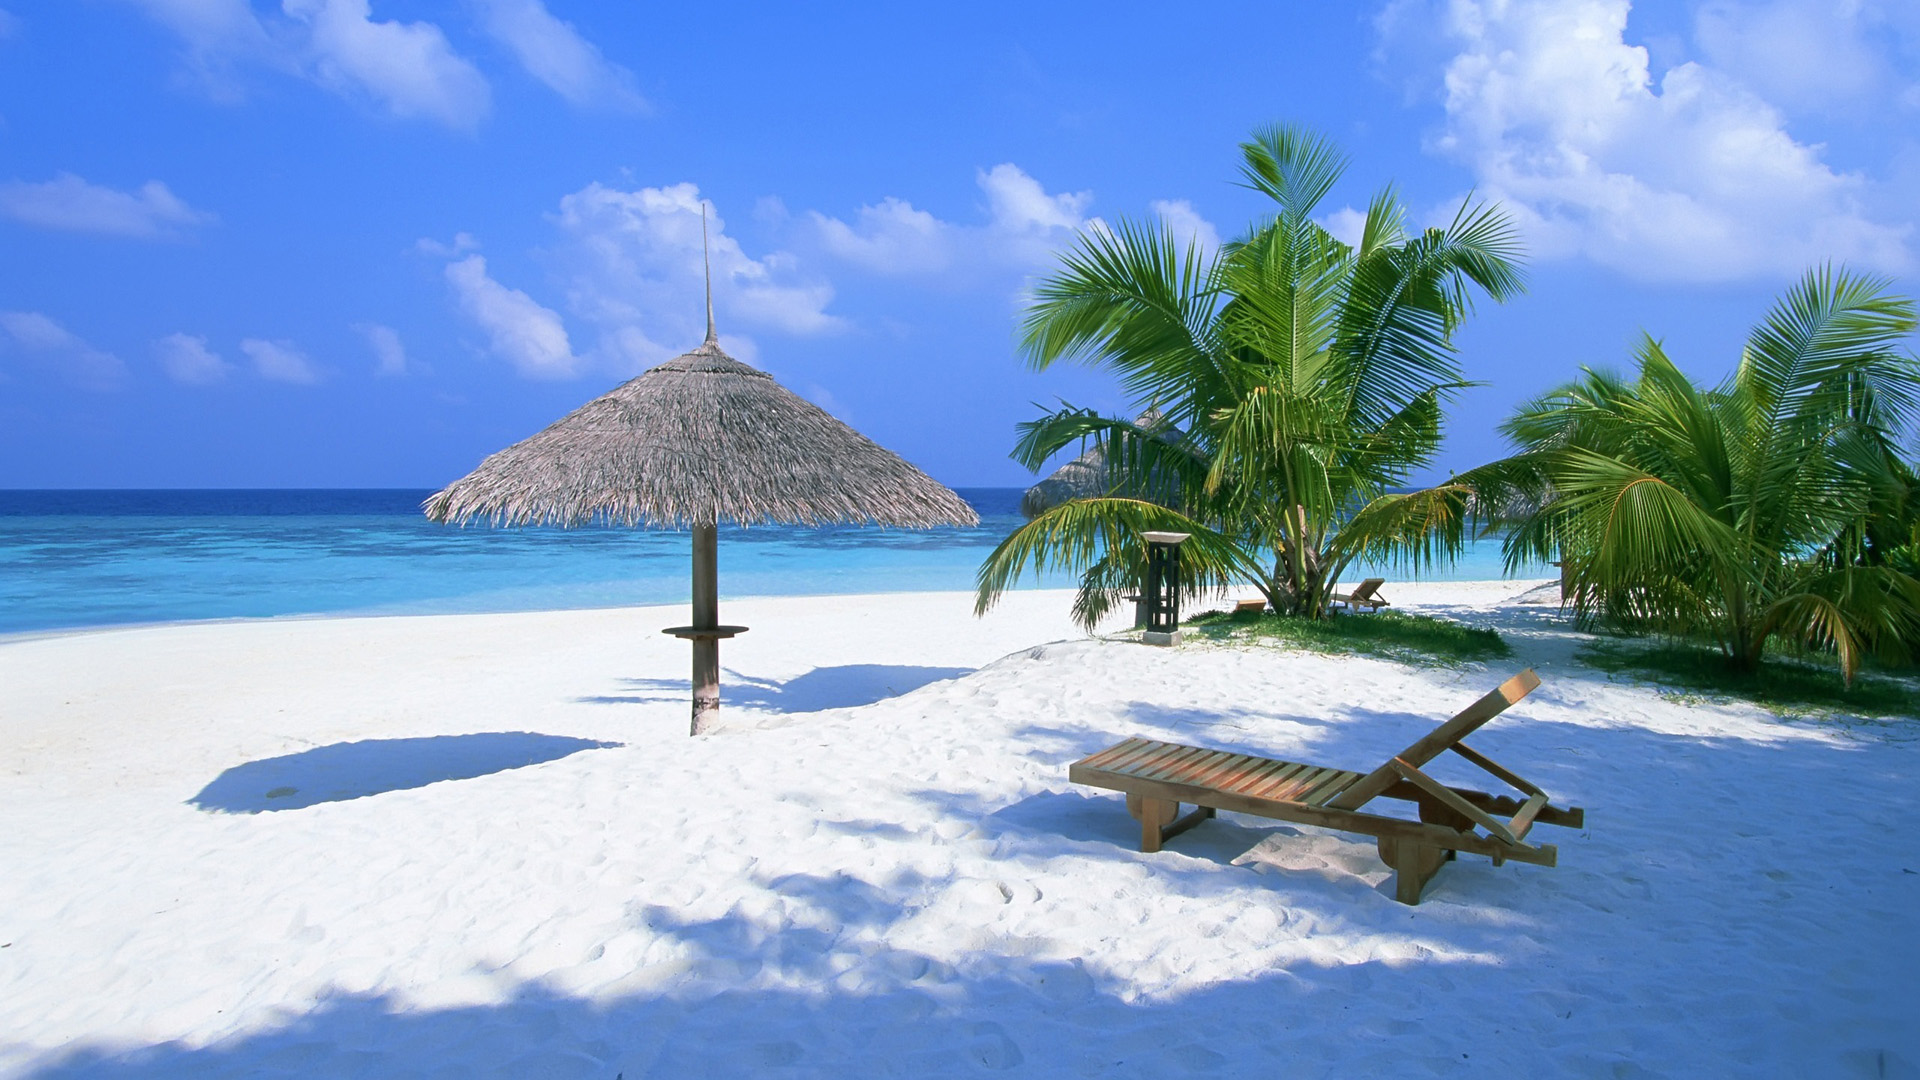 巴哈马,海洋,沙滩,躺椅,棕榈树,夏天风景桌面壁纸